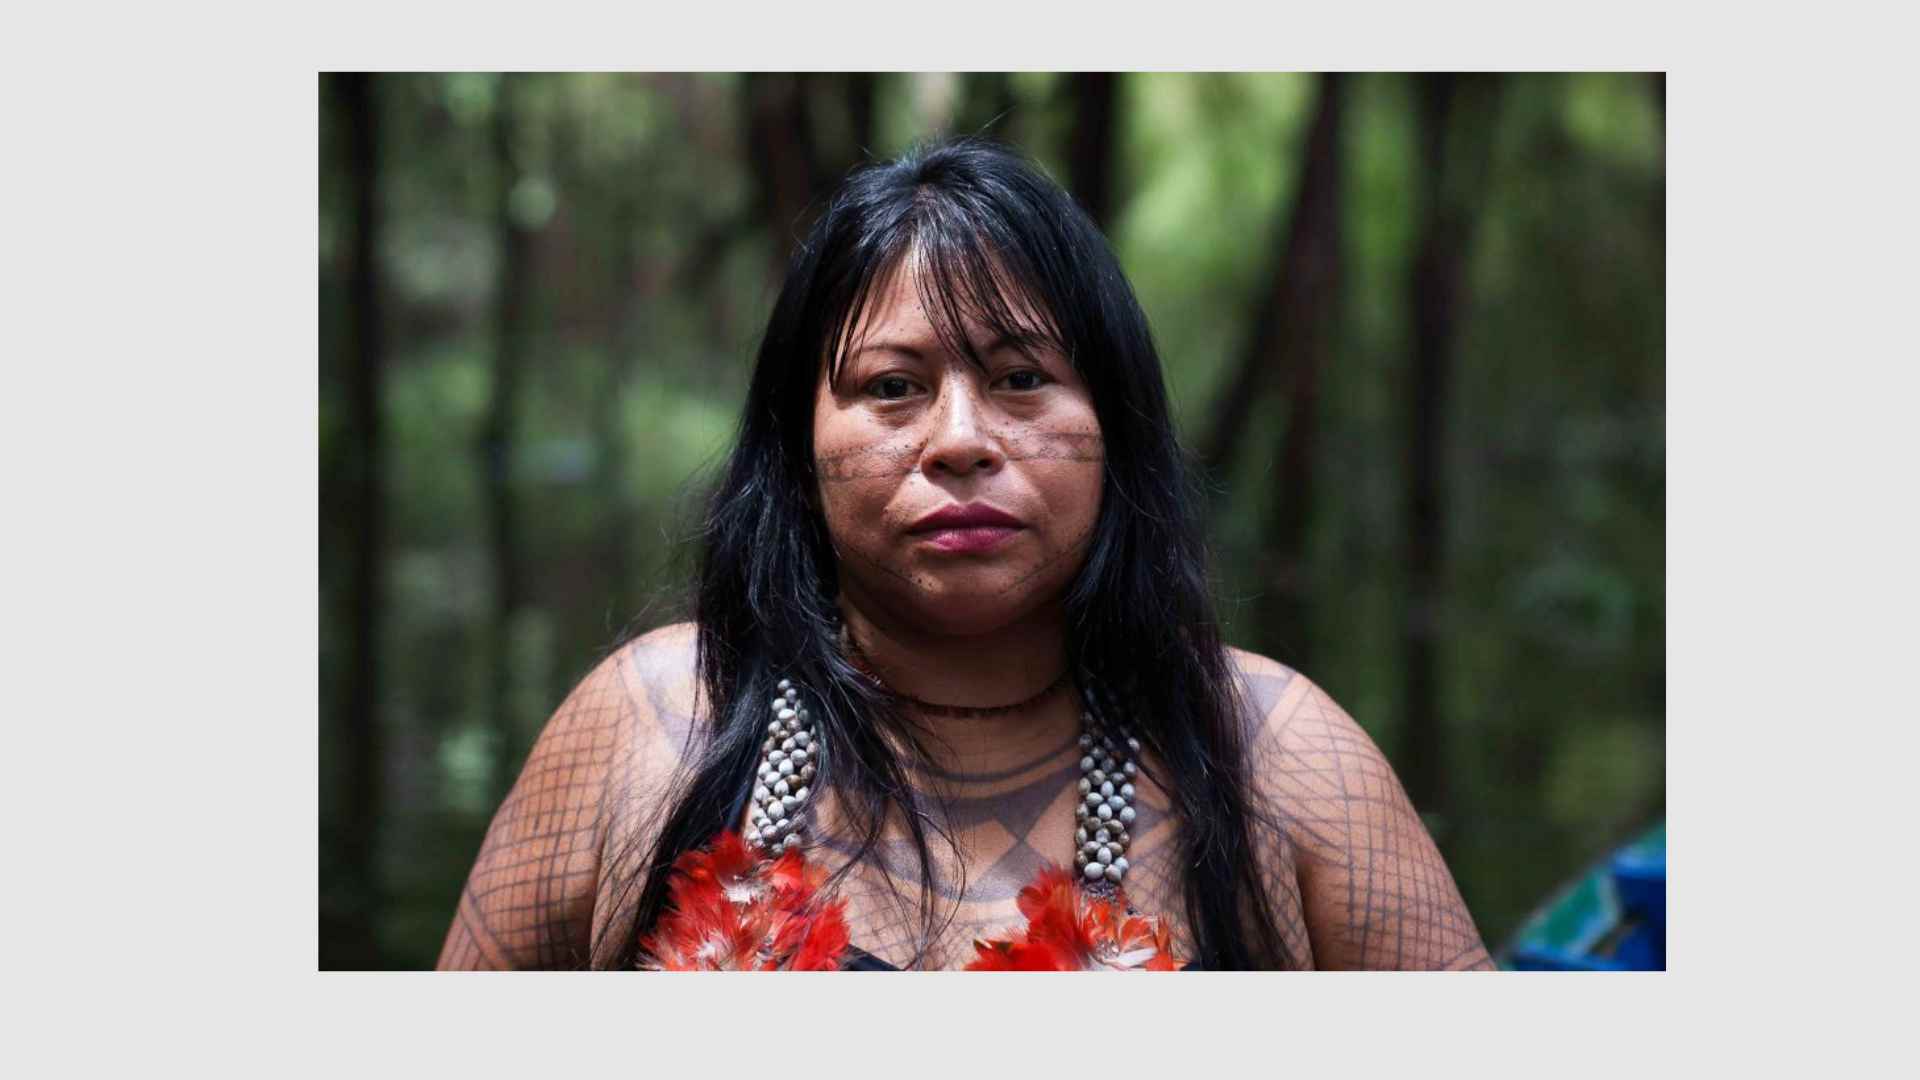 Mujer indígena, es premiada por campaña contra empresas mineras en Amazonas